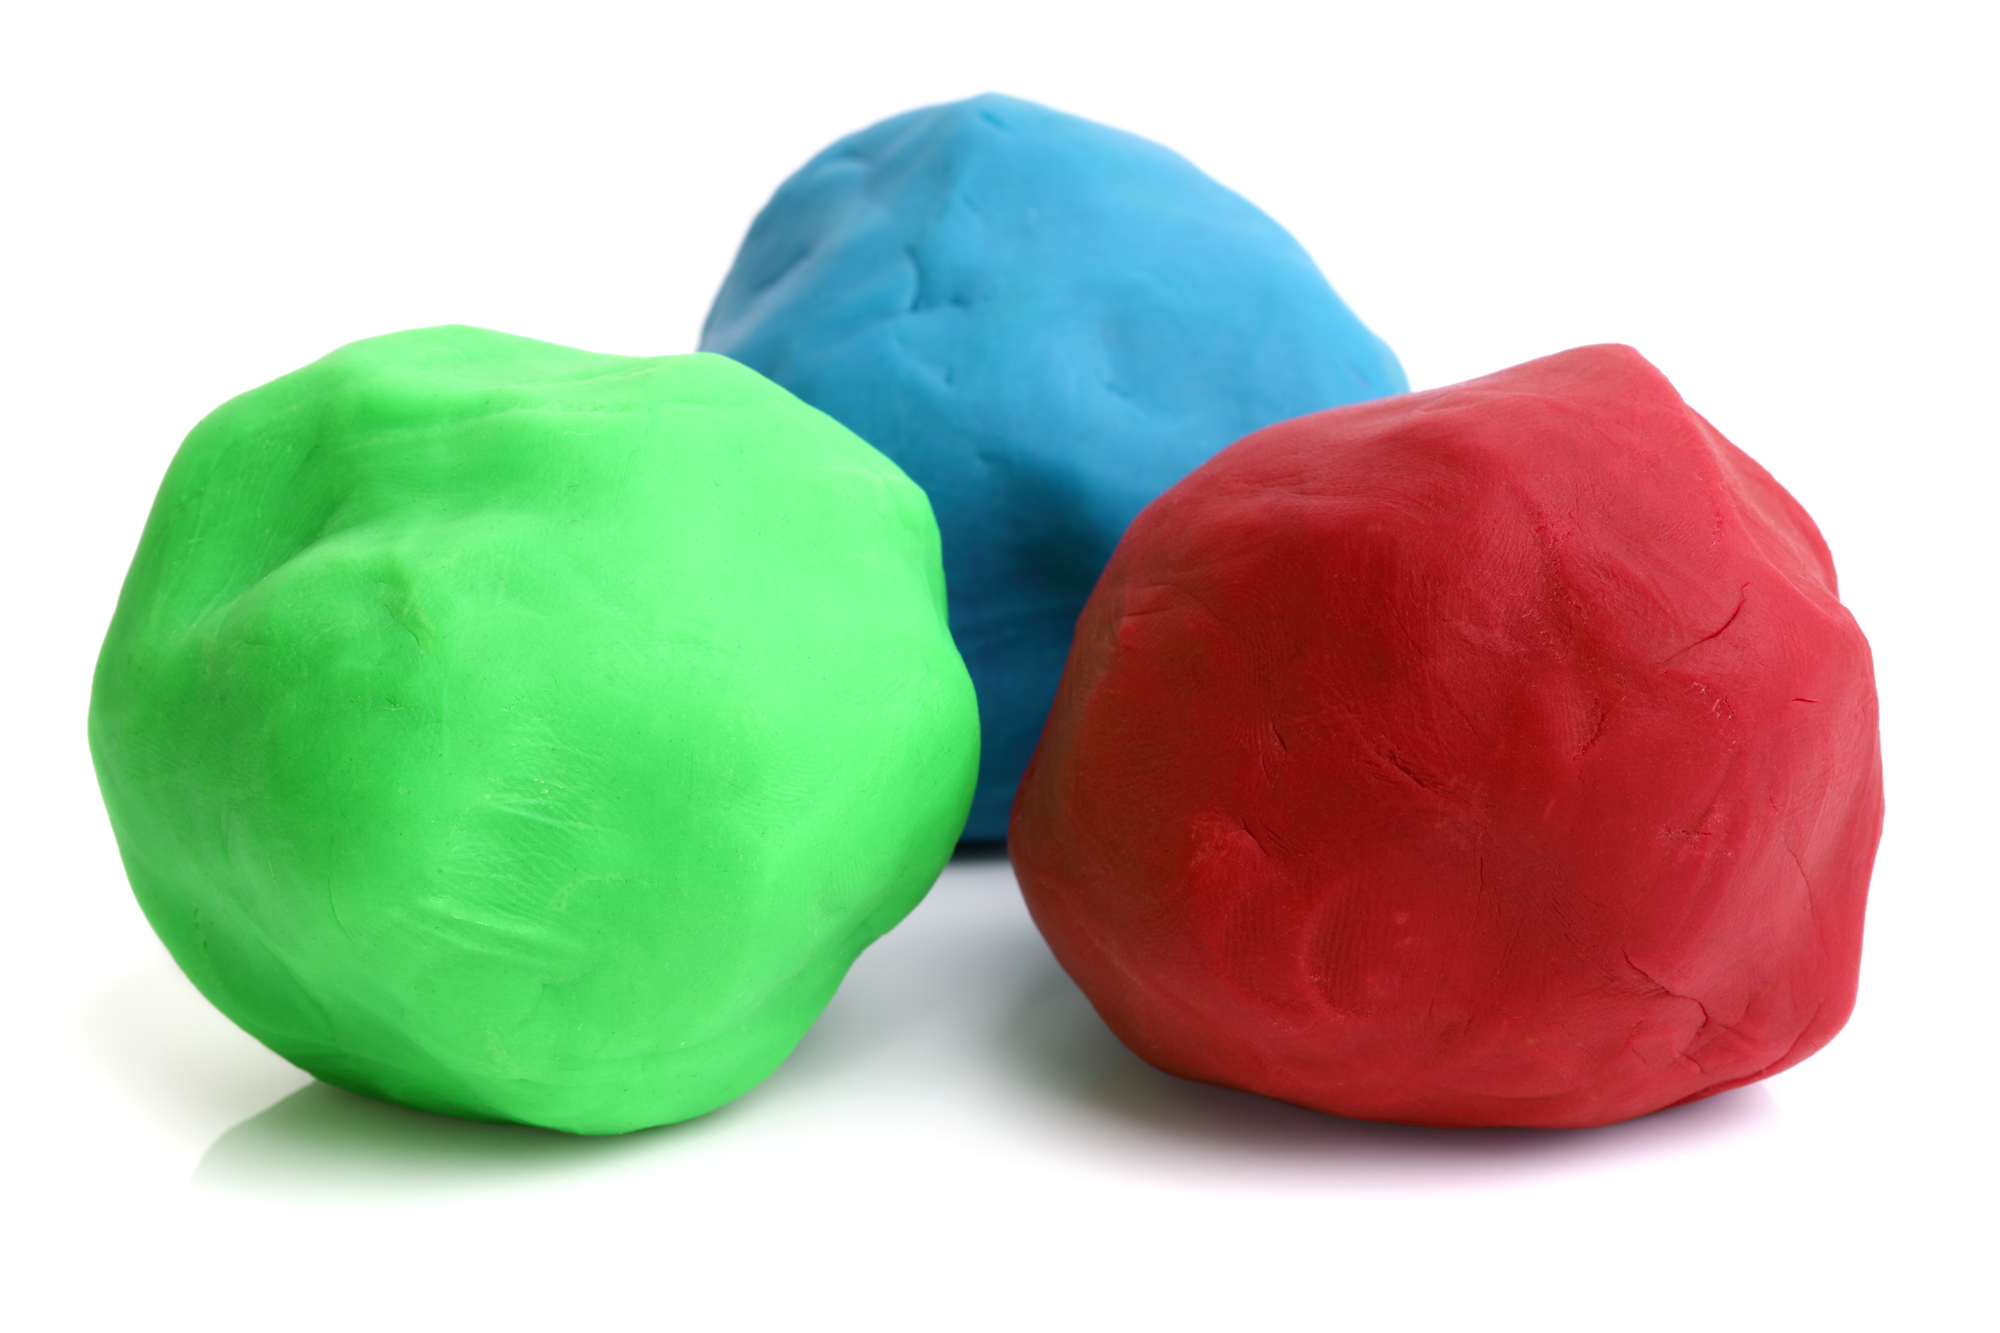 DIY non-toxic play dough for kids